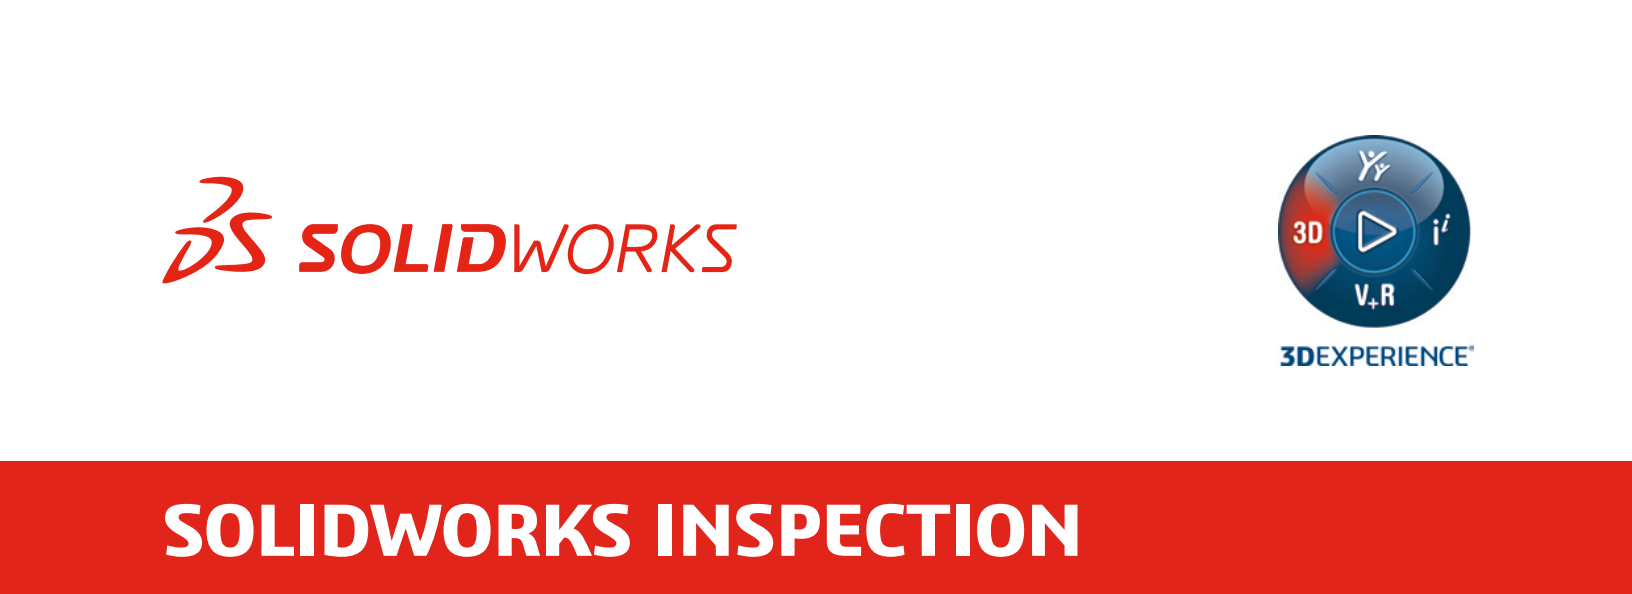 Solidworks 2022 Inspection新增功能:光学字符识别、可自定义的检查报告